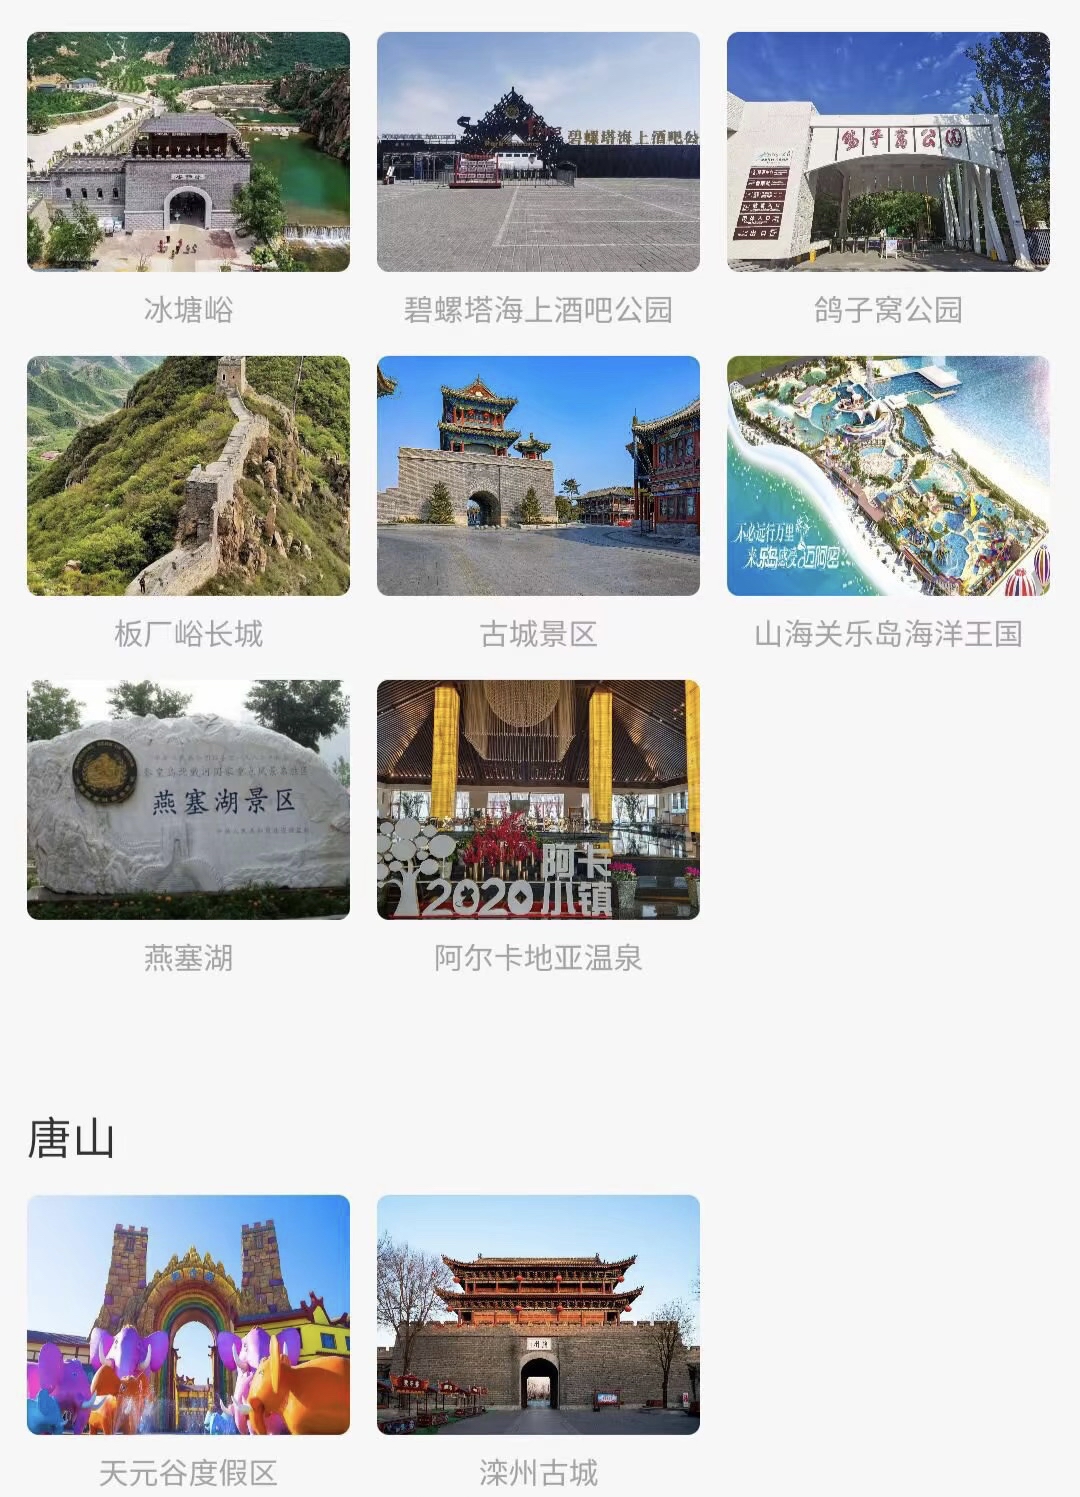 盘锦、葫芦岛、朝阳、秦皇岛、锦州值得旅游的景点，大家和家人可以去打卡拍照